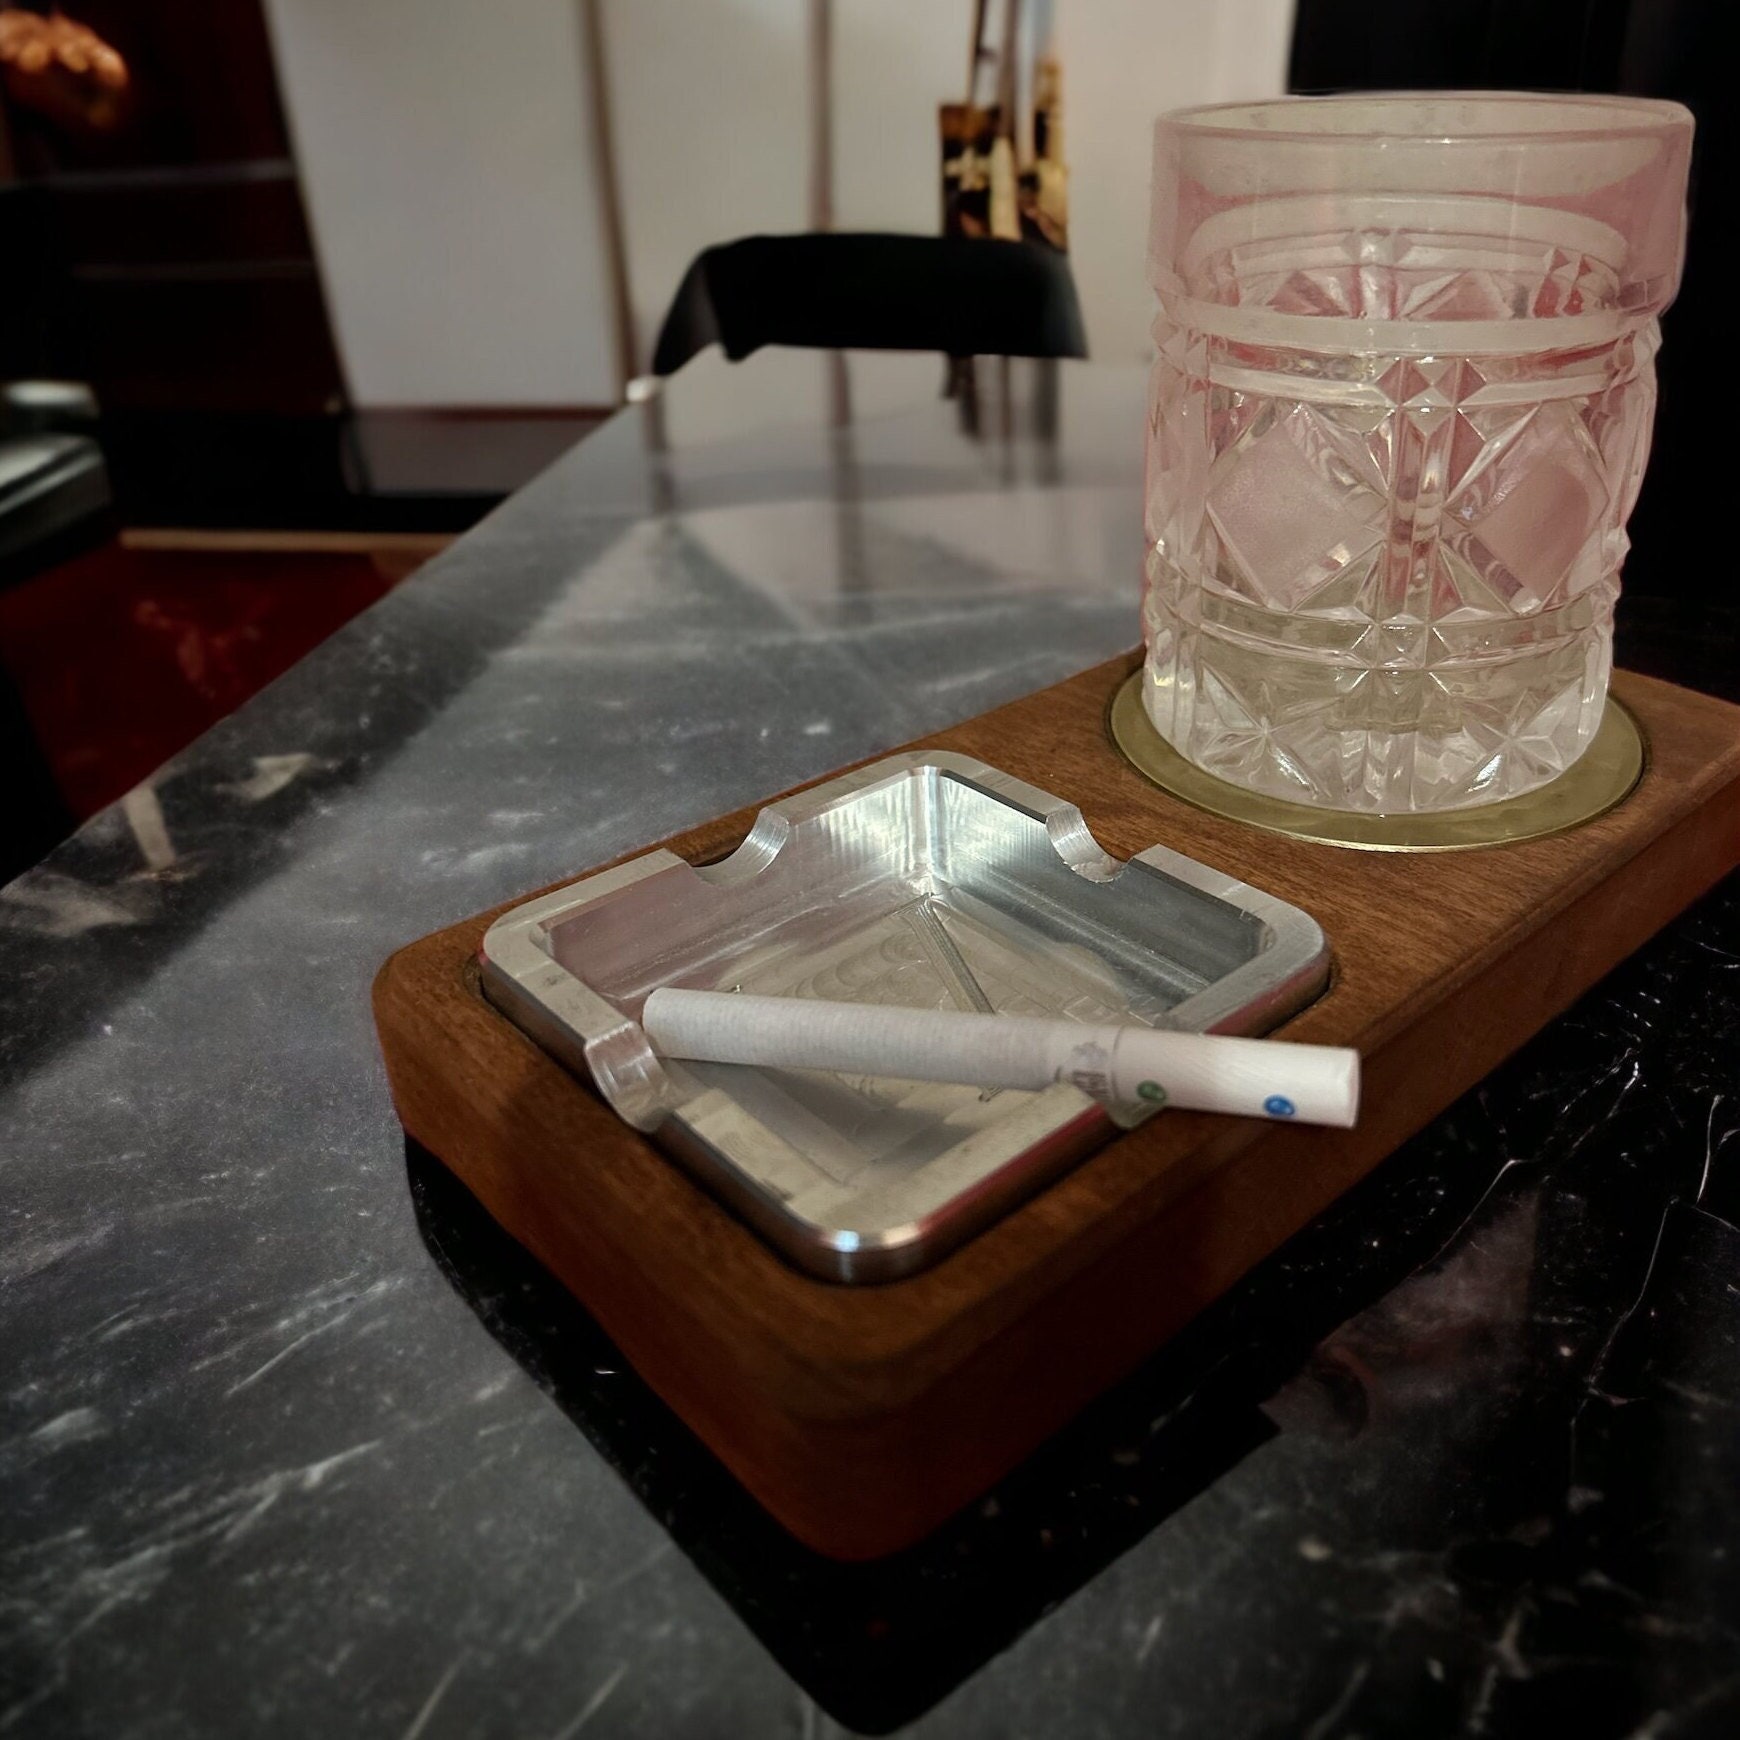 GERMANUS Zigarrenascher Kristall Glas Zigarren Aschenbecher - Blume